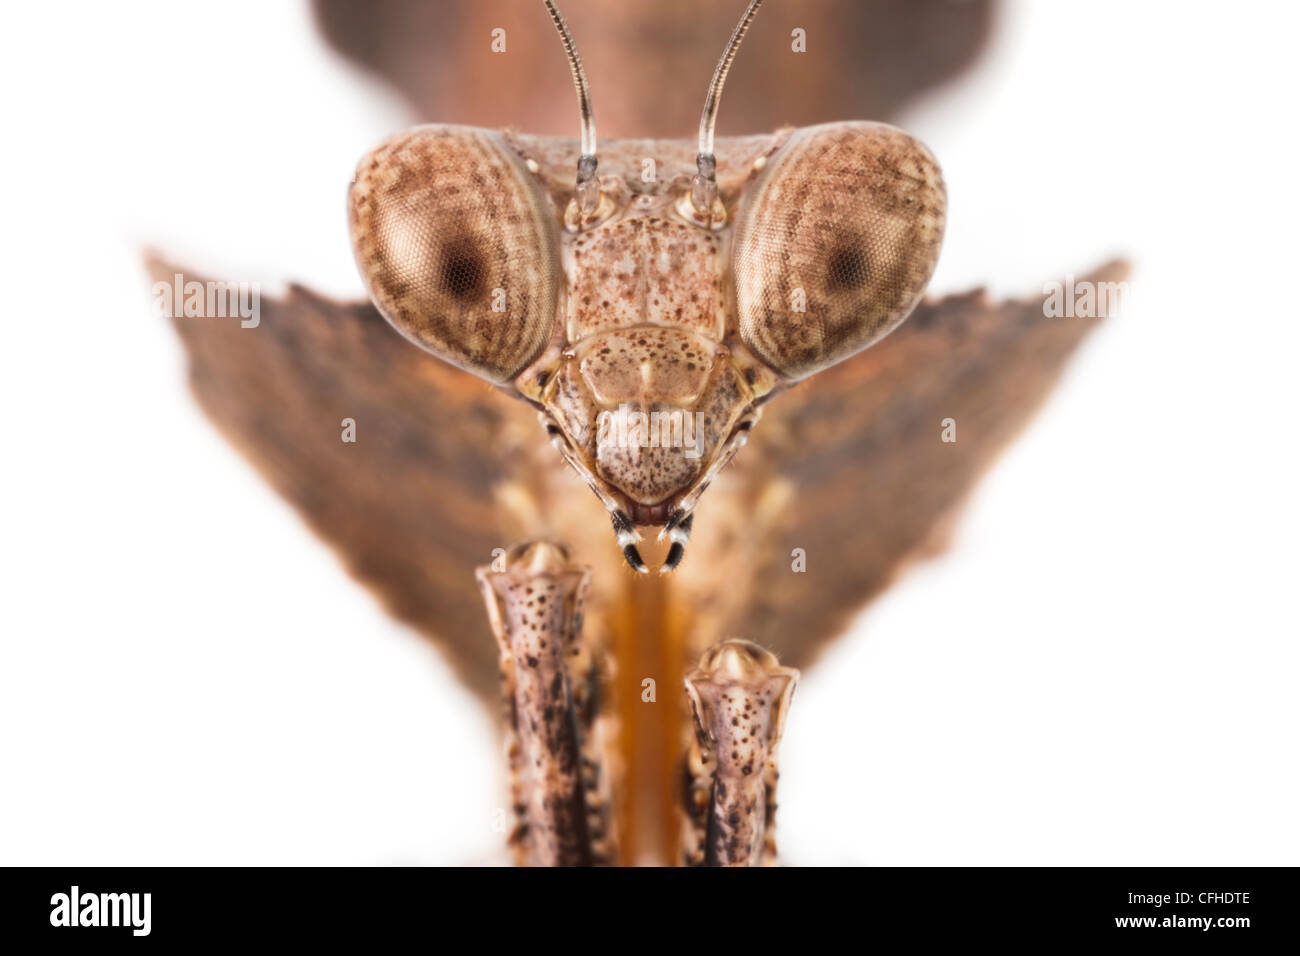 Mantis hoja muerta, cerca de la cabeza. En cautiverio, originarias del sudeste de Asia. Foto de stock